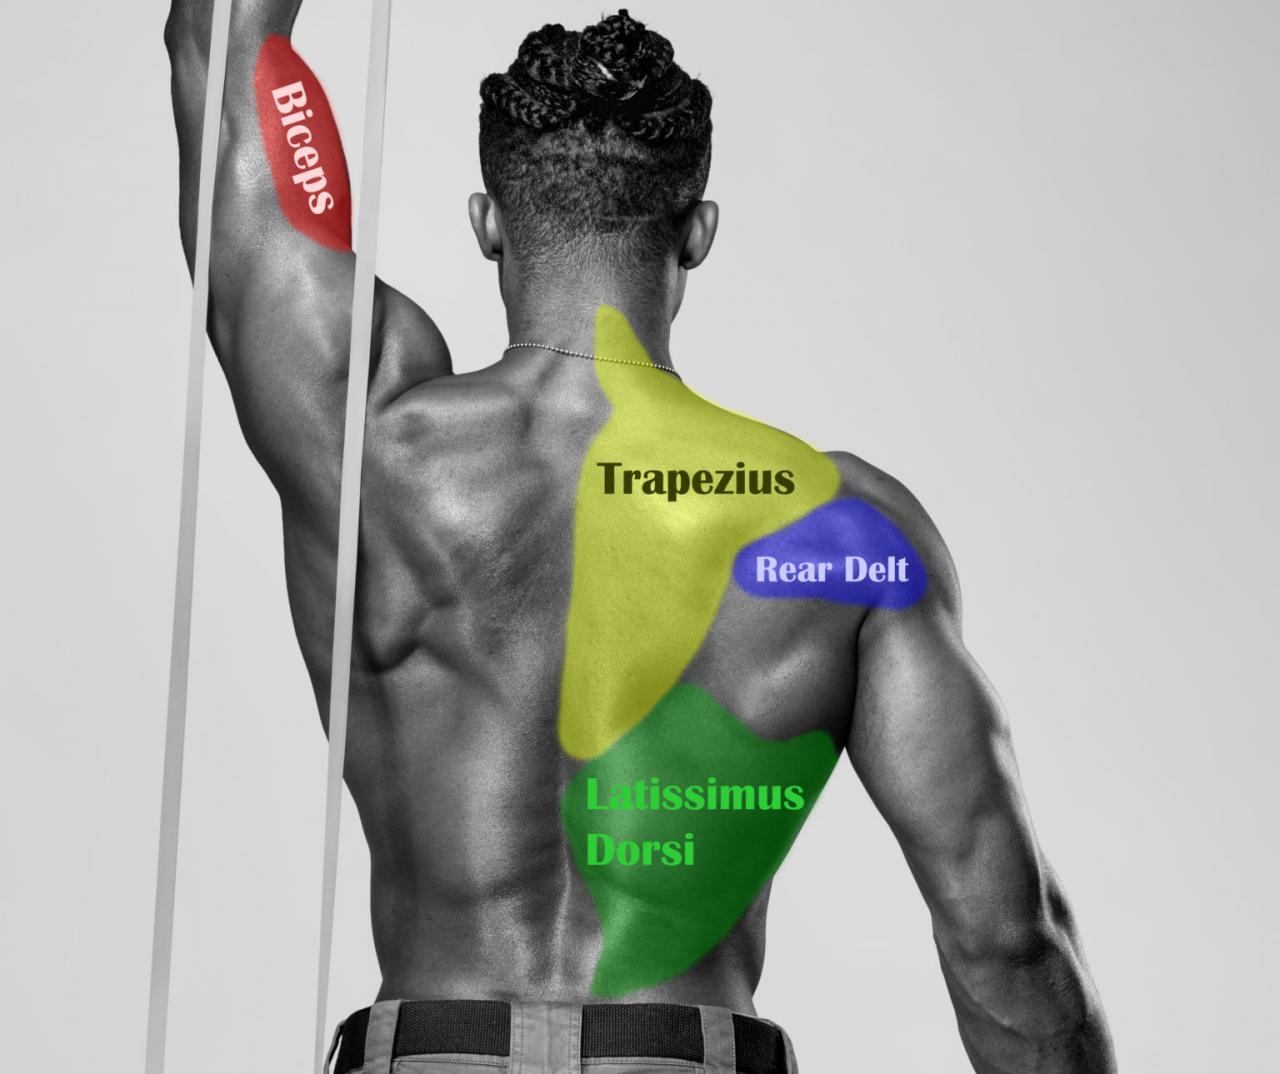 Muscoli dorsali spieren anatomy anatomie libere achter